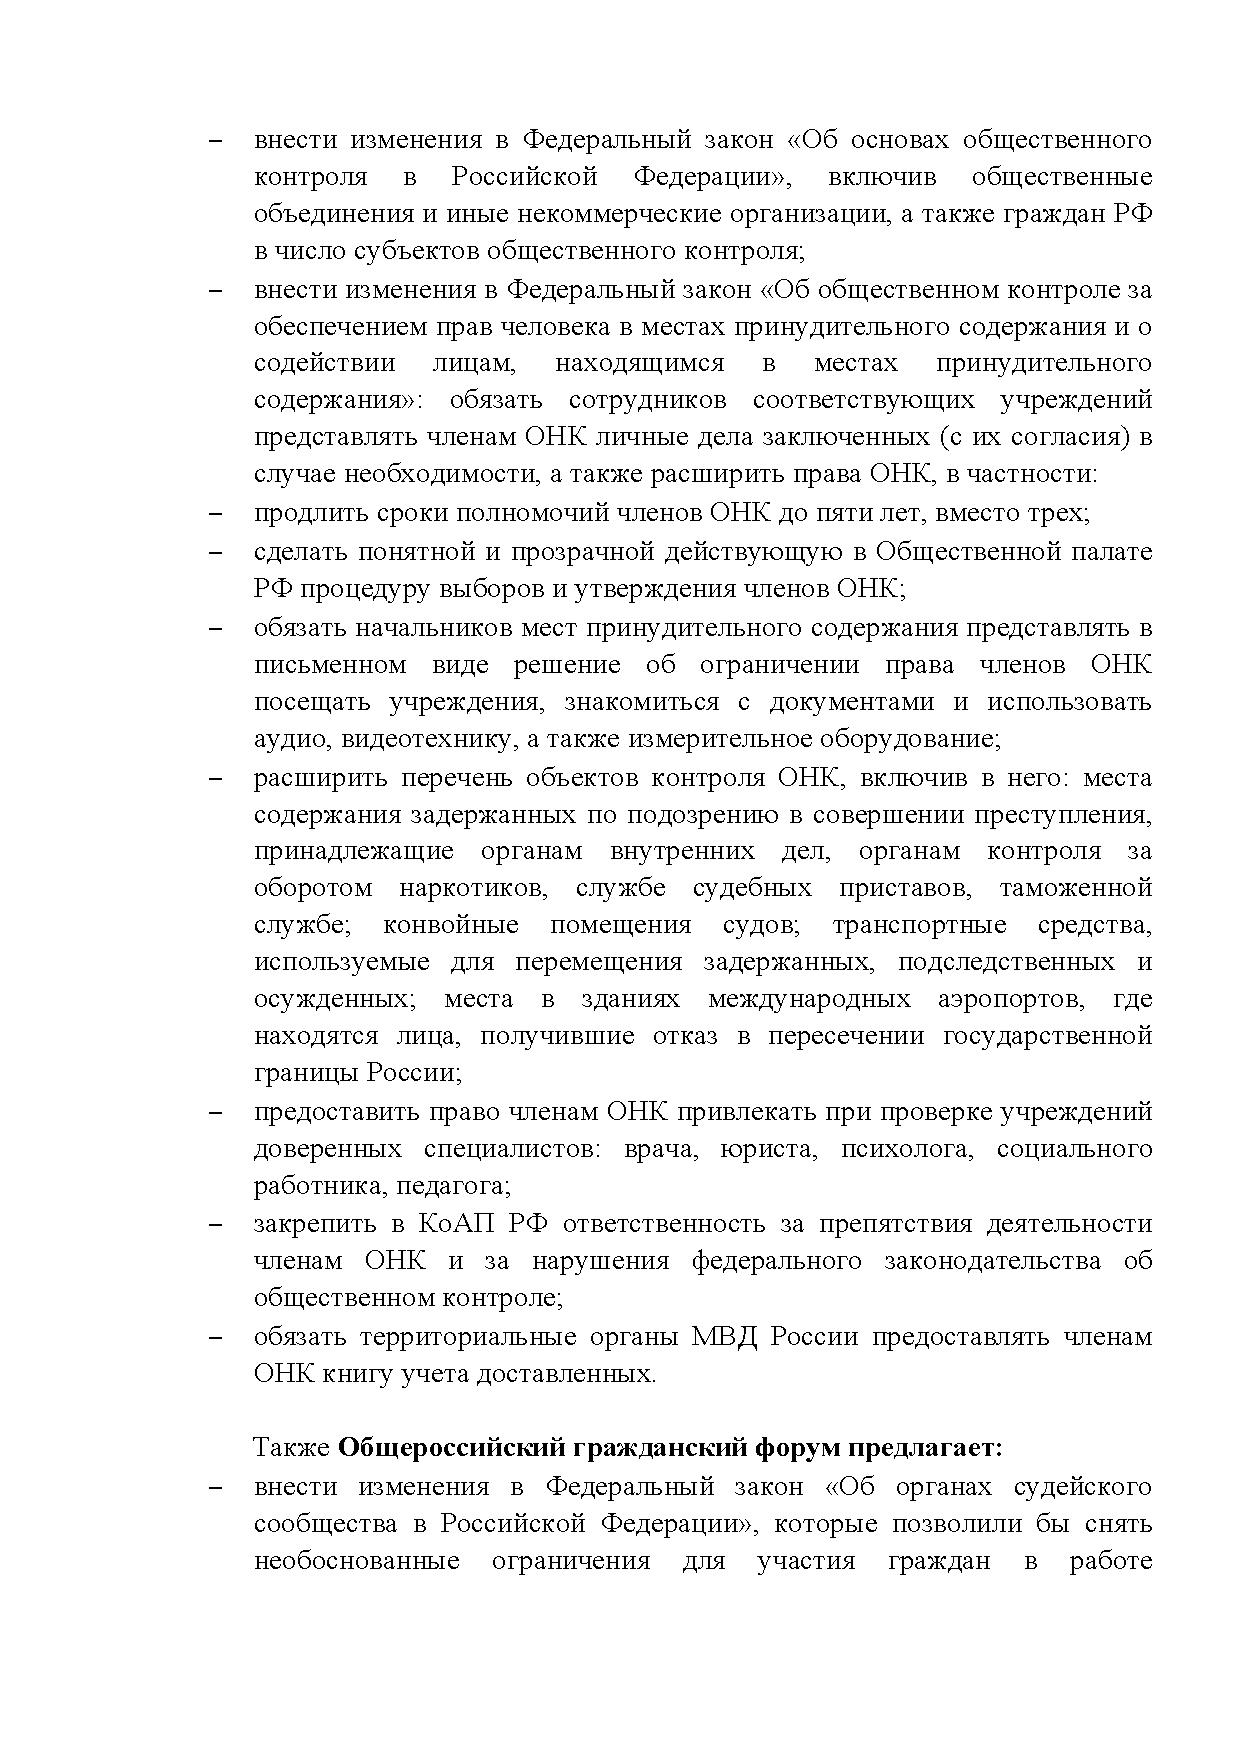  Опубликованы Предложения Общероссийского гражданского форума 2015 - фото 12